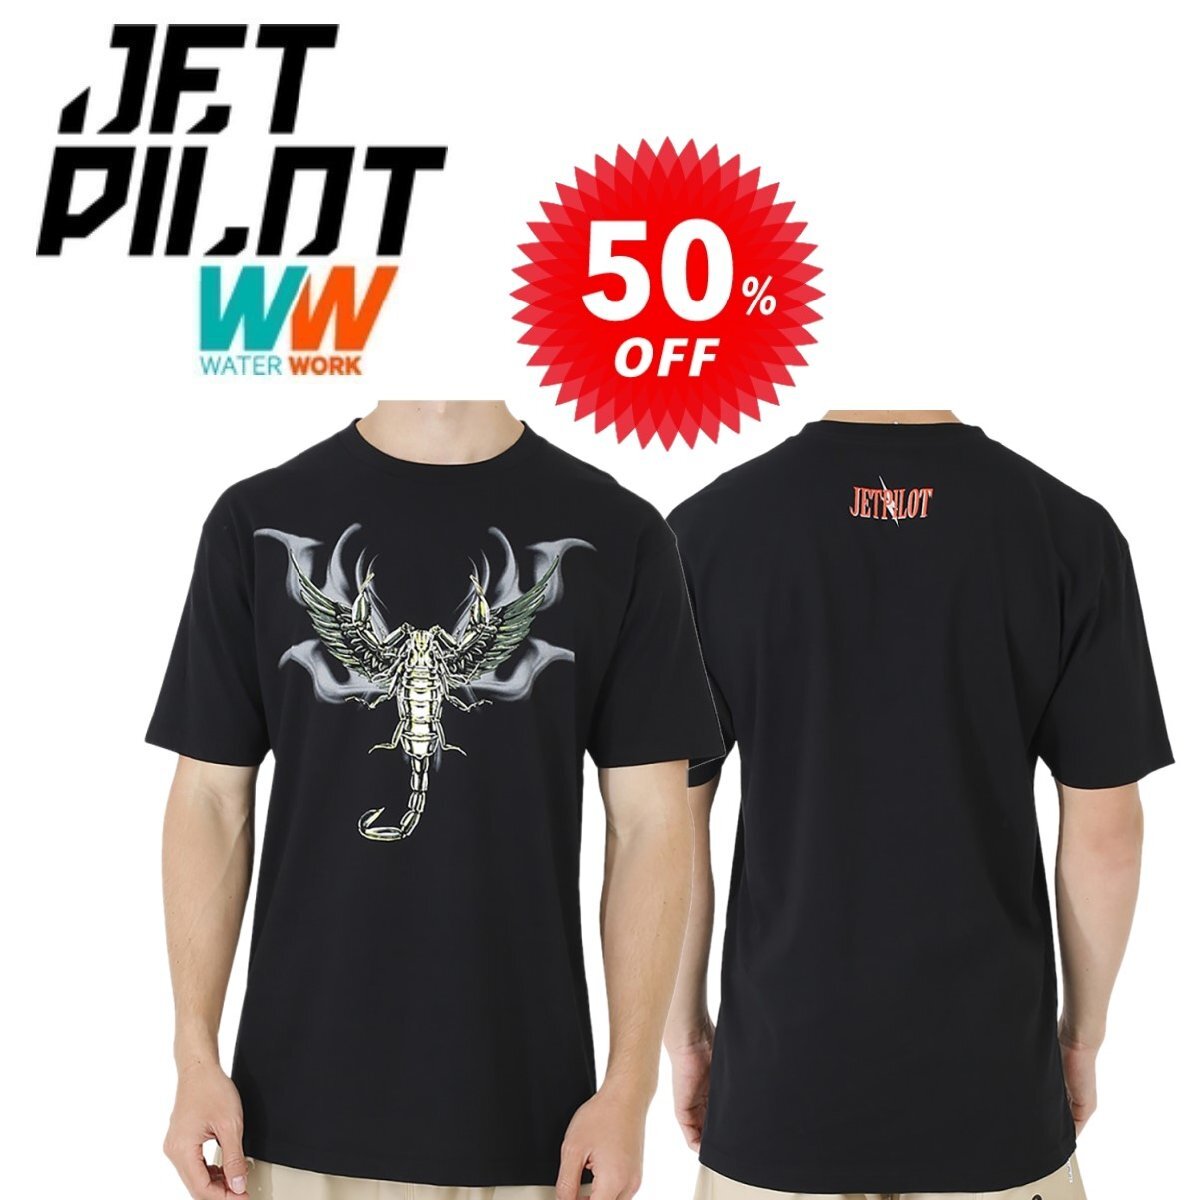 ジェットパイロット JETPILOT Tシャツ セール 50%オフ 送料無料 スコーピオン メンズ Tシャツ ブラック M S19670_画像1